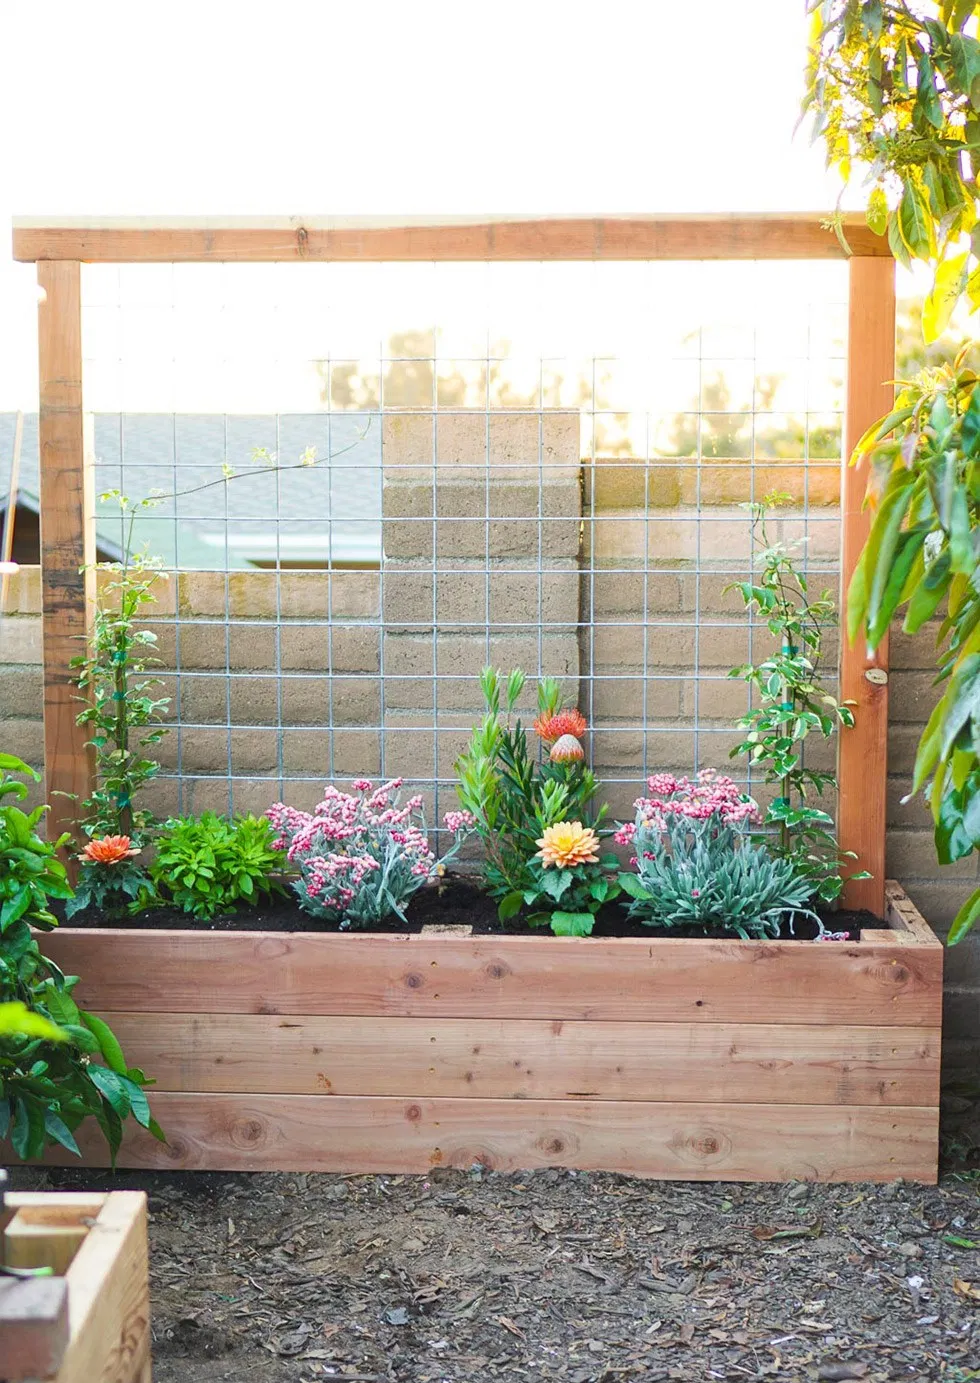 Creating Your Own Garden Planter Boxes: A Fun DIY Project